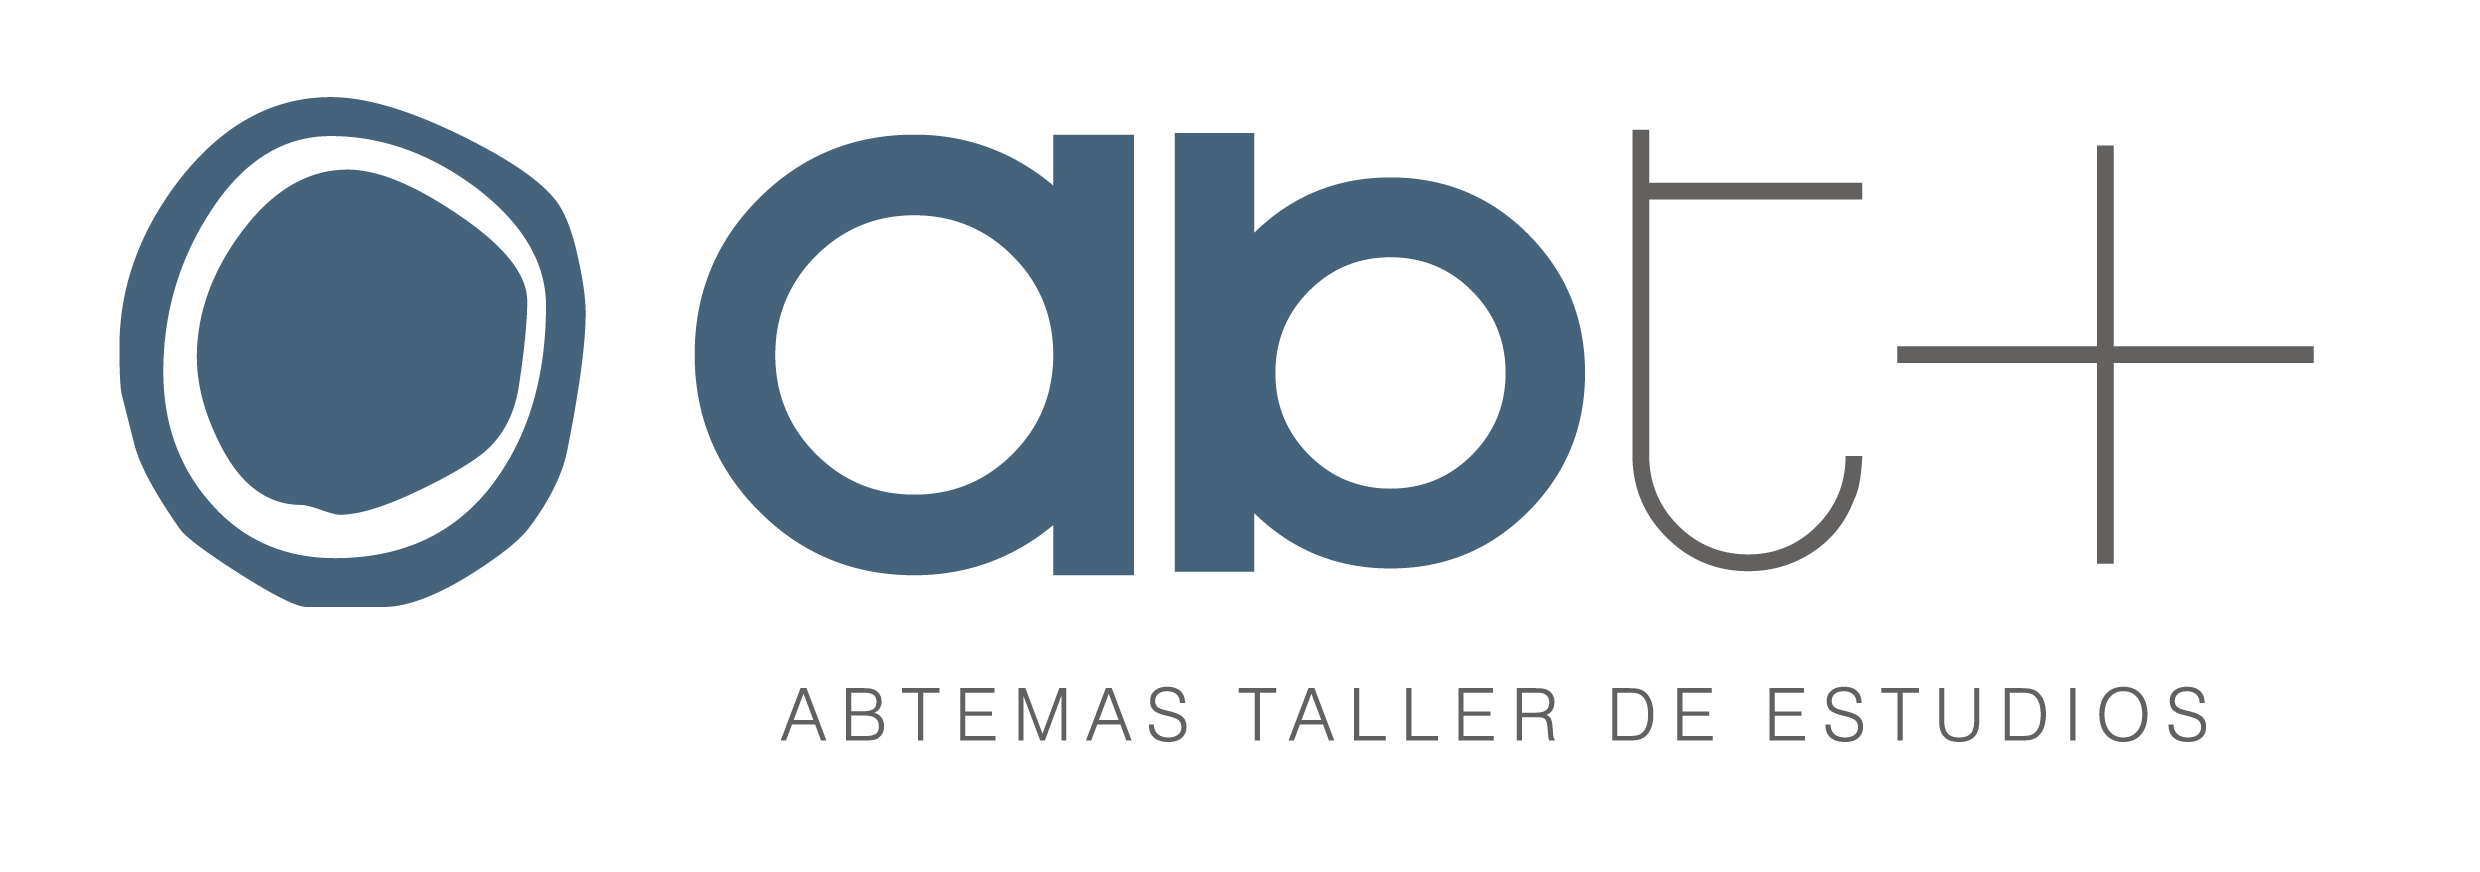 Abtemas se incorpora a la asociación QGIS España